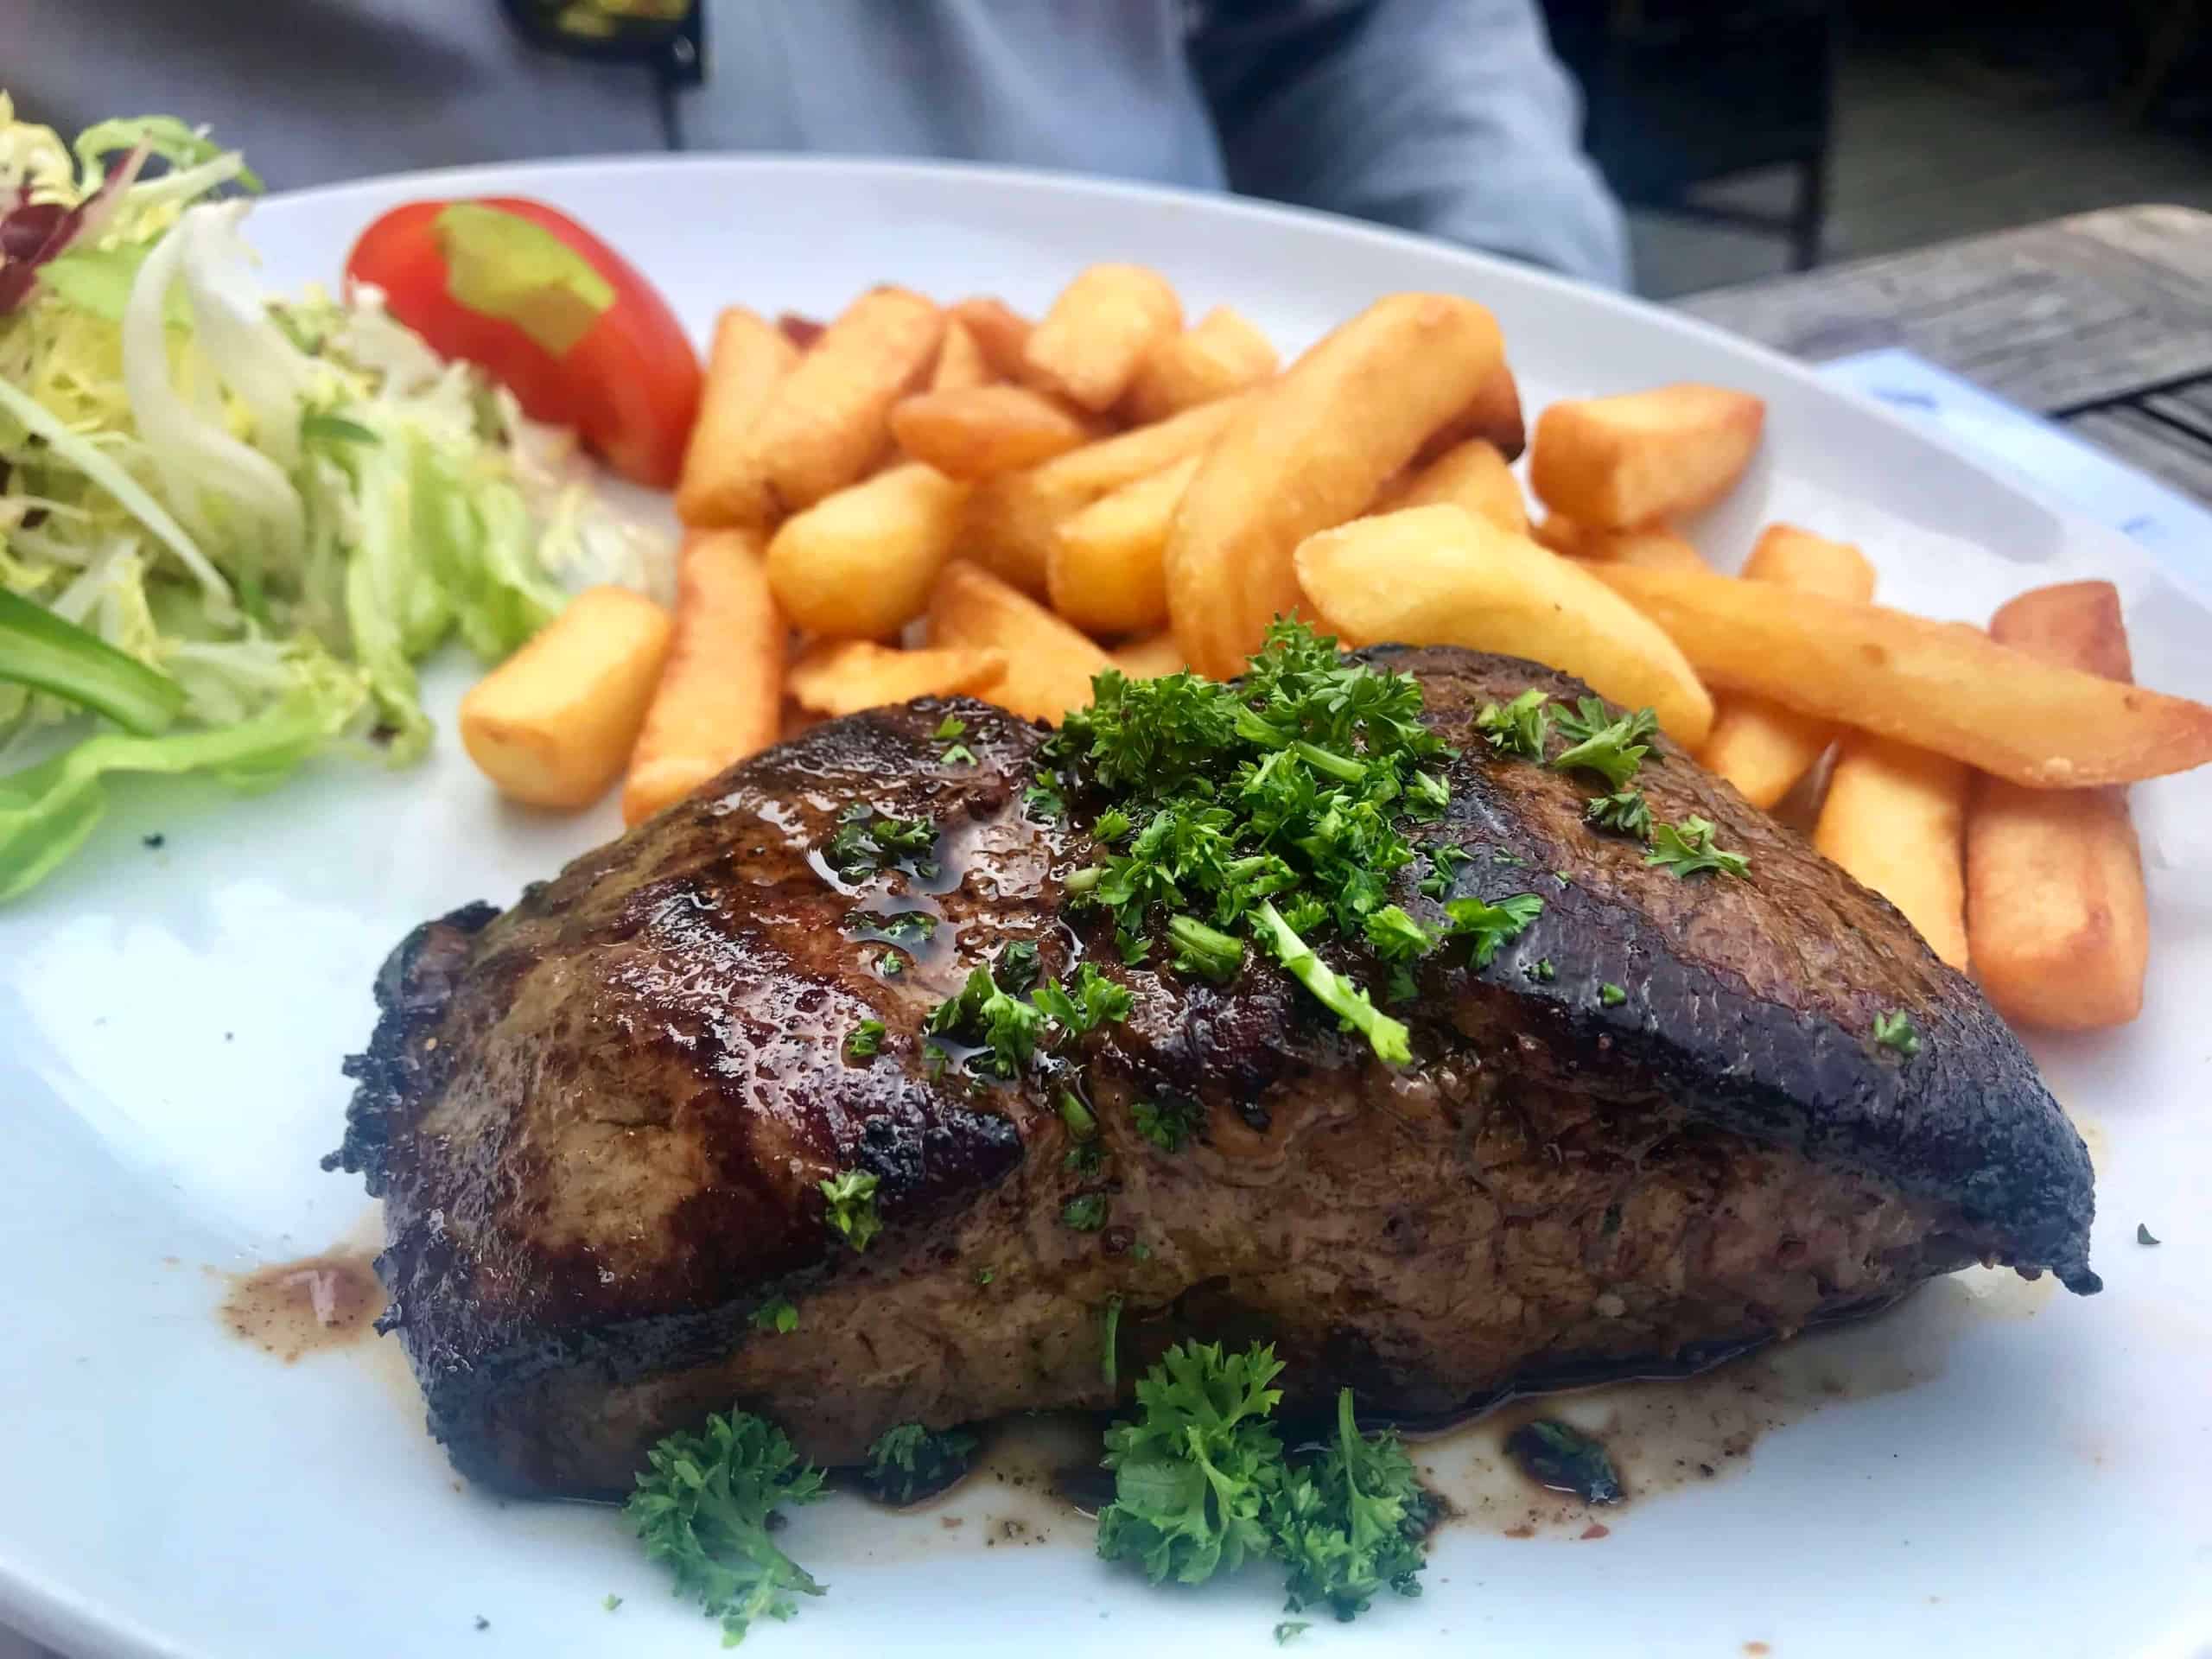 Horse steak in Belgium